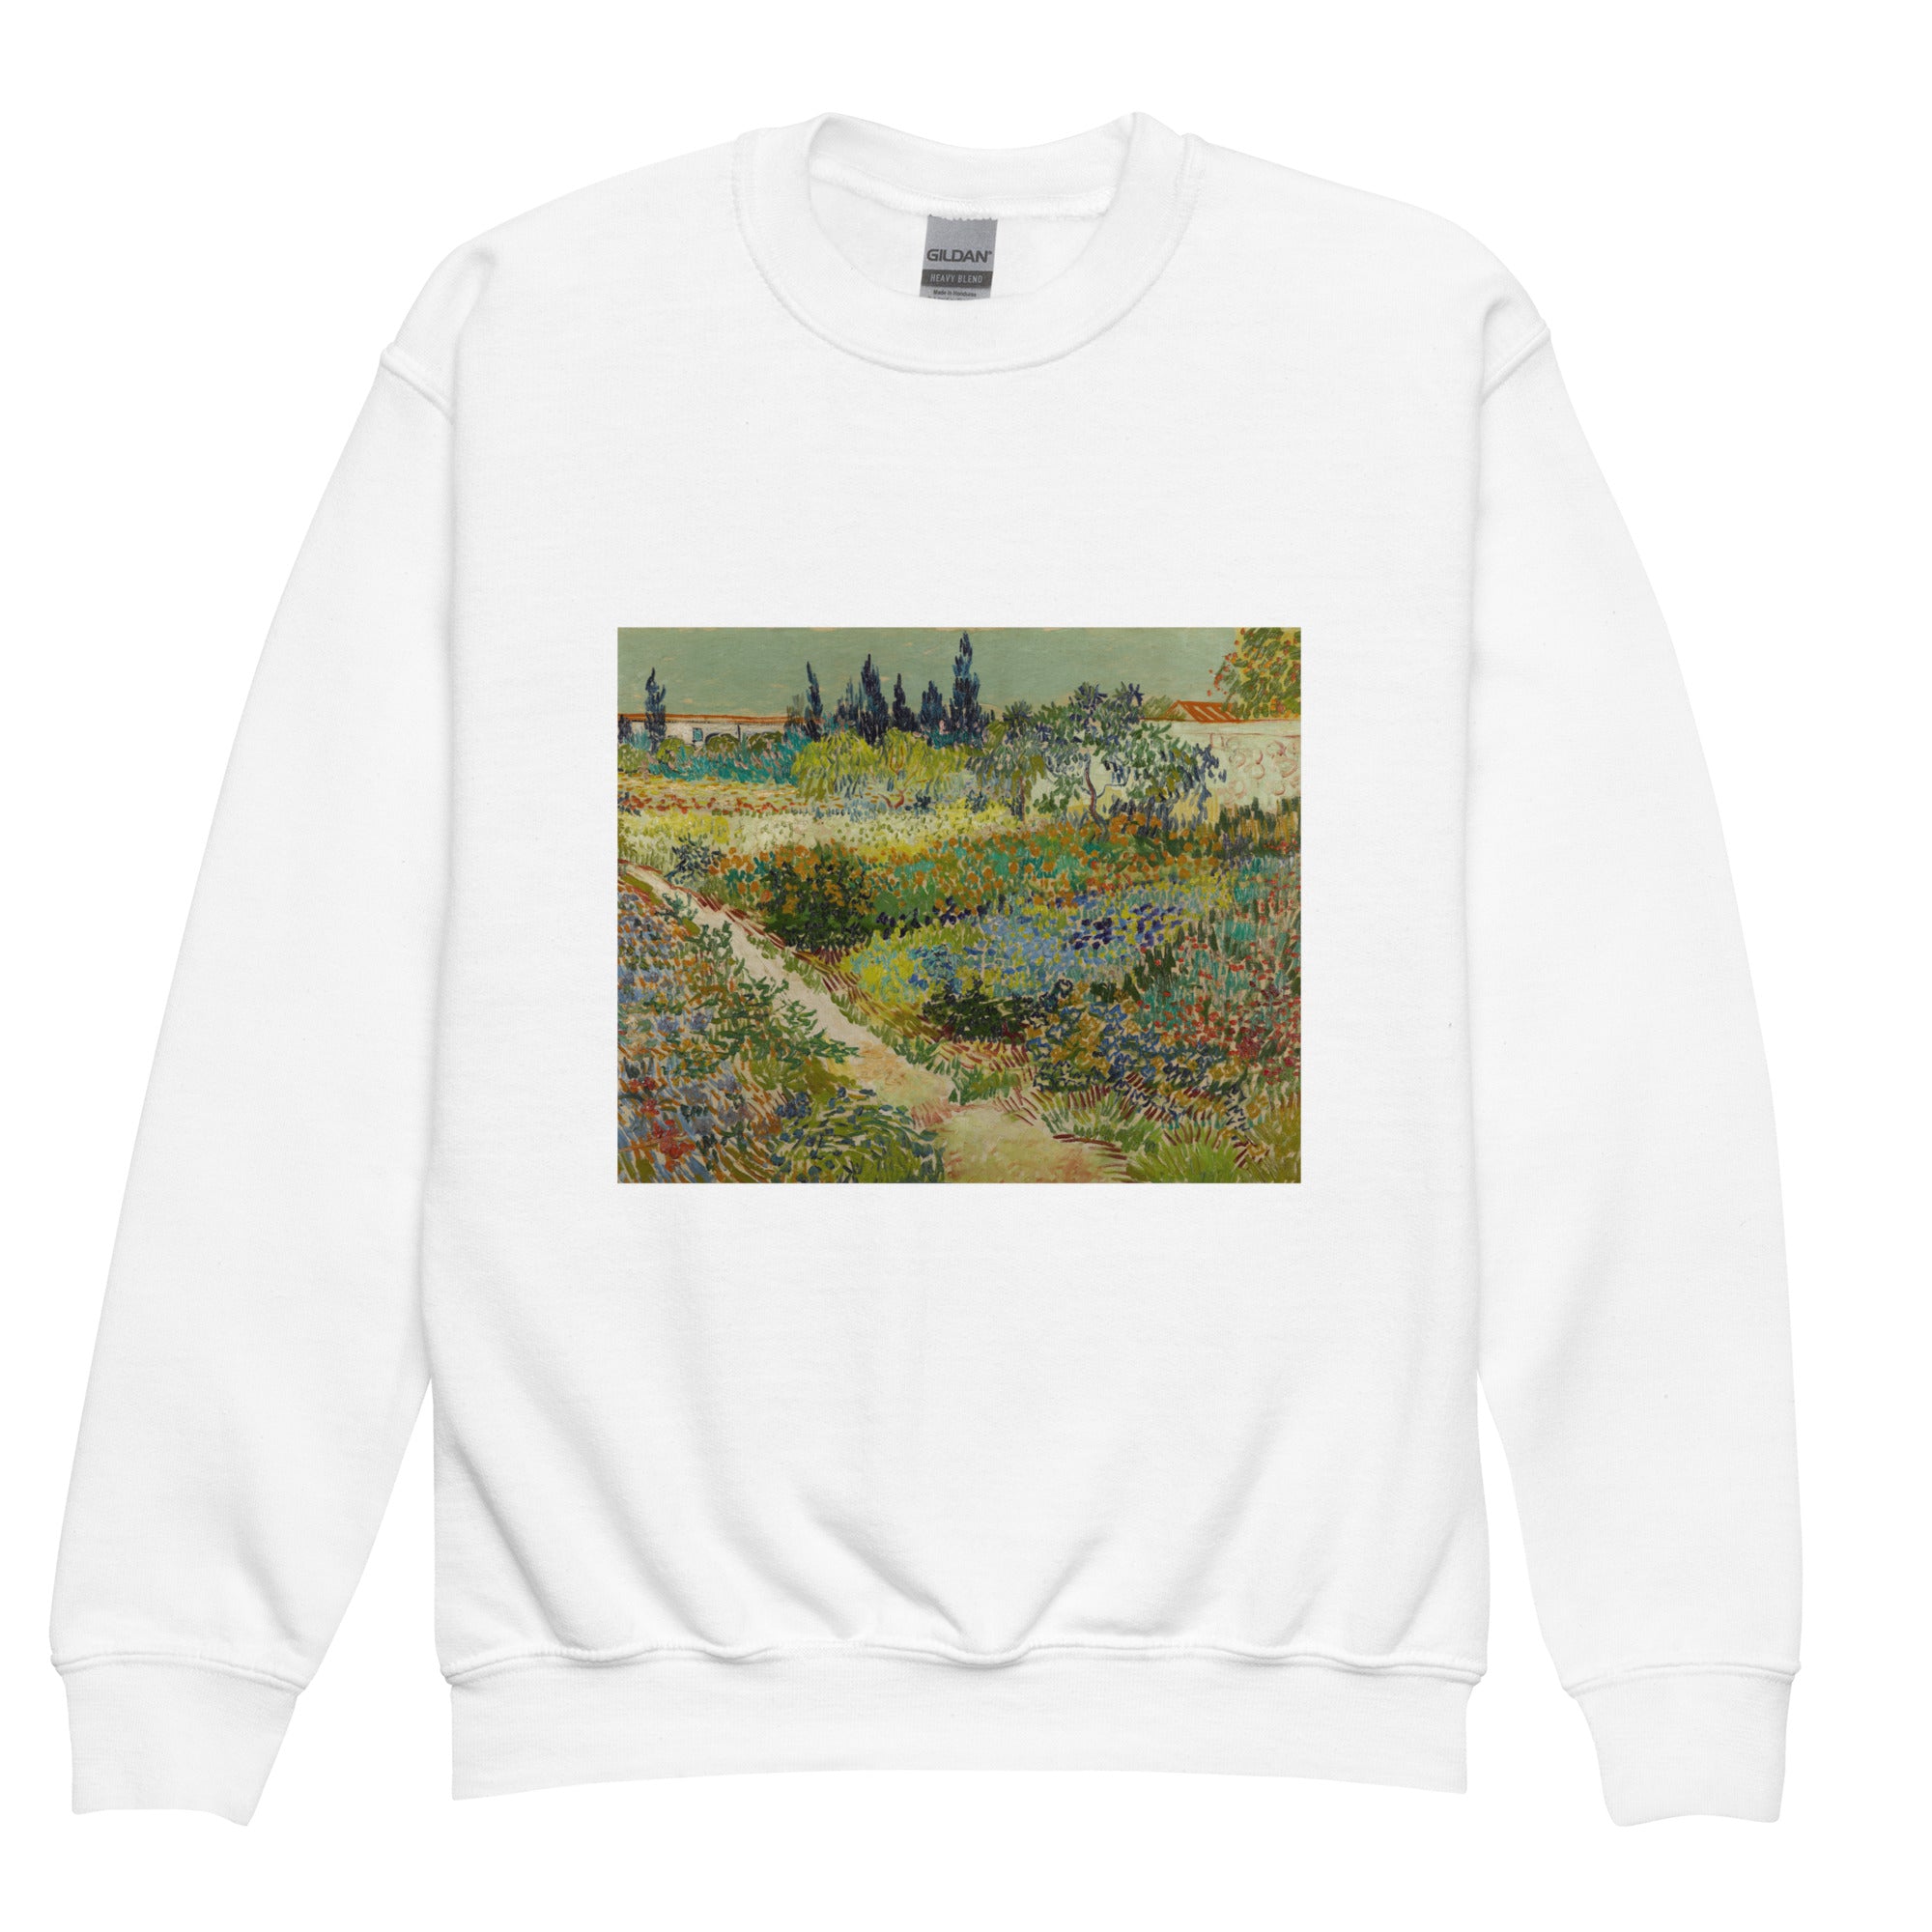 Rundhals-Sweatshirt mit berühmtem Gemälde „Garten in Arles“ von Vincent van Gogh | Premium-Kunst-Sweatshirt für Jugendliche